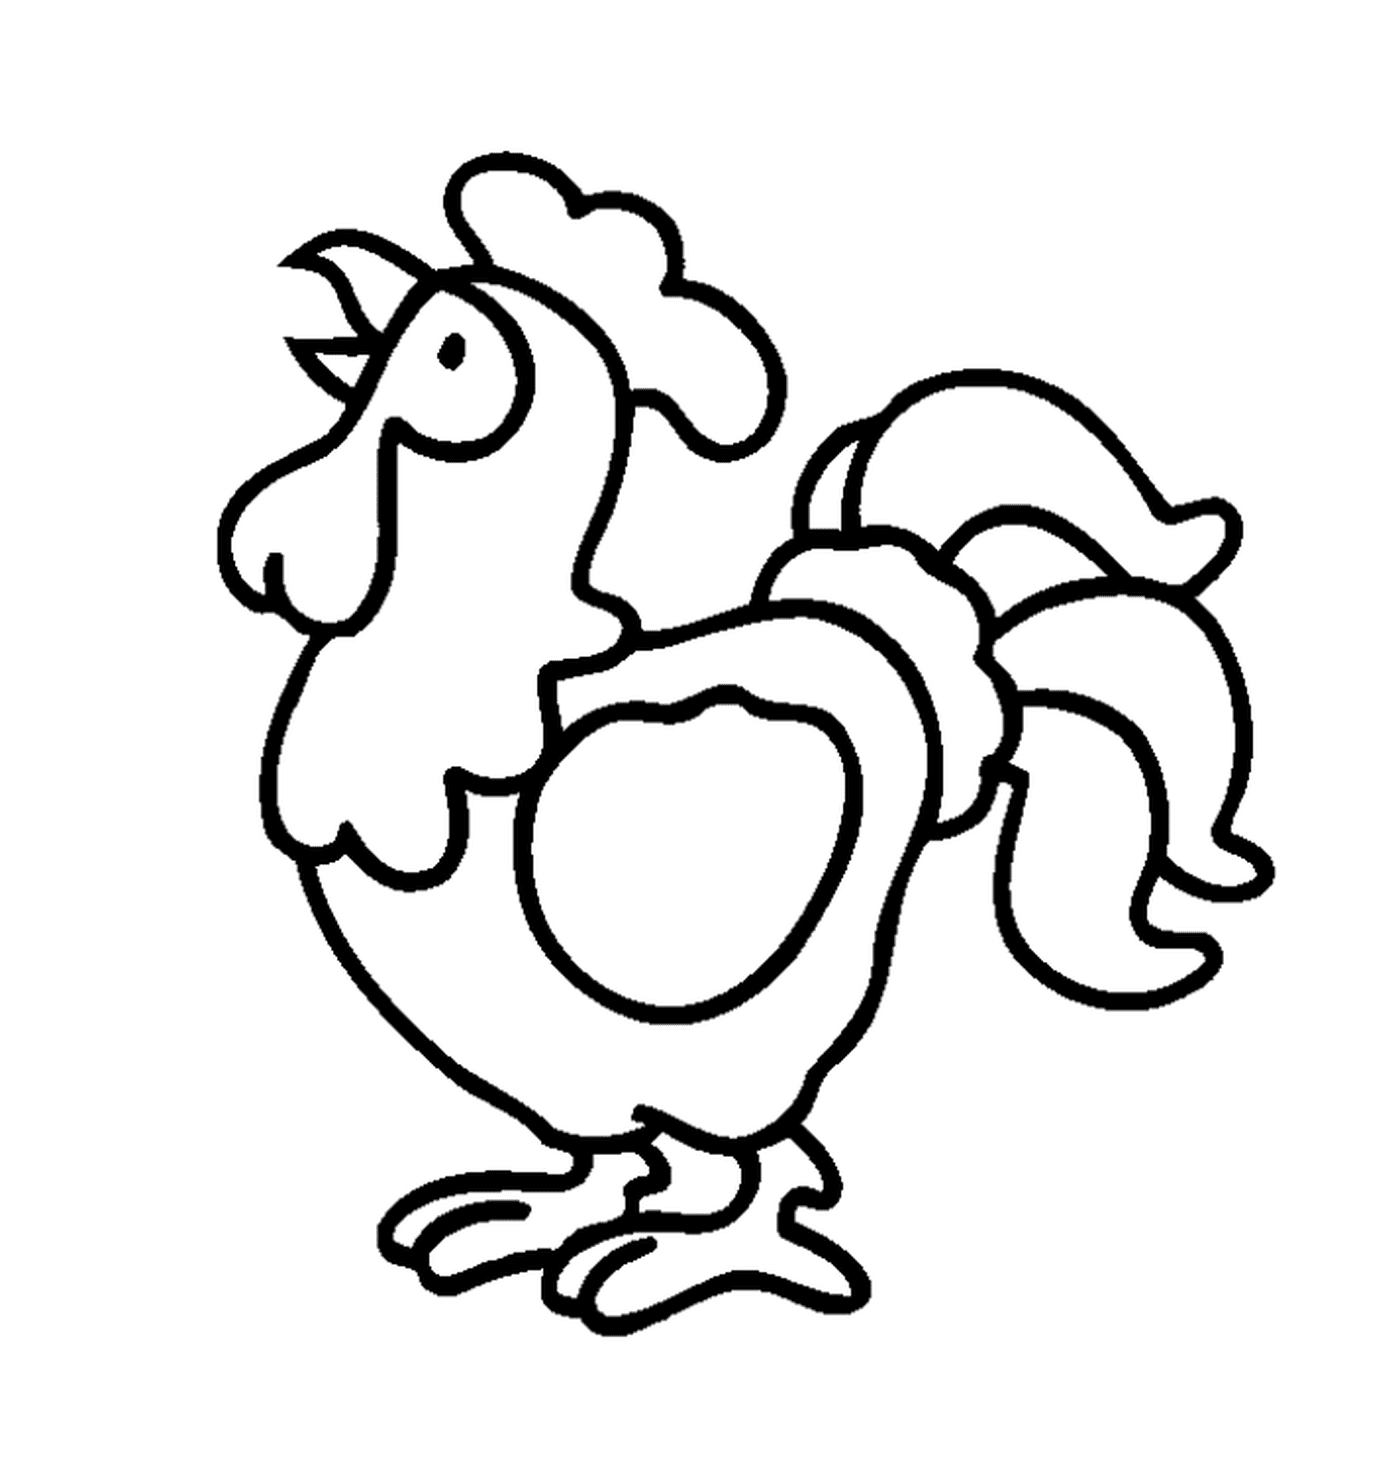  Un gallo 